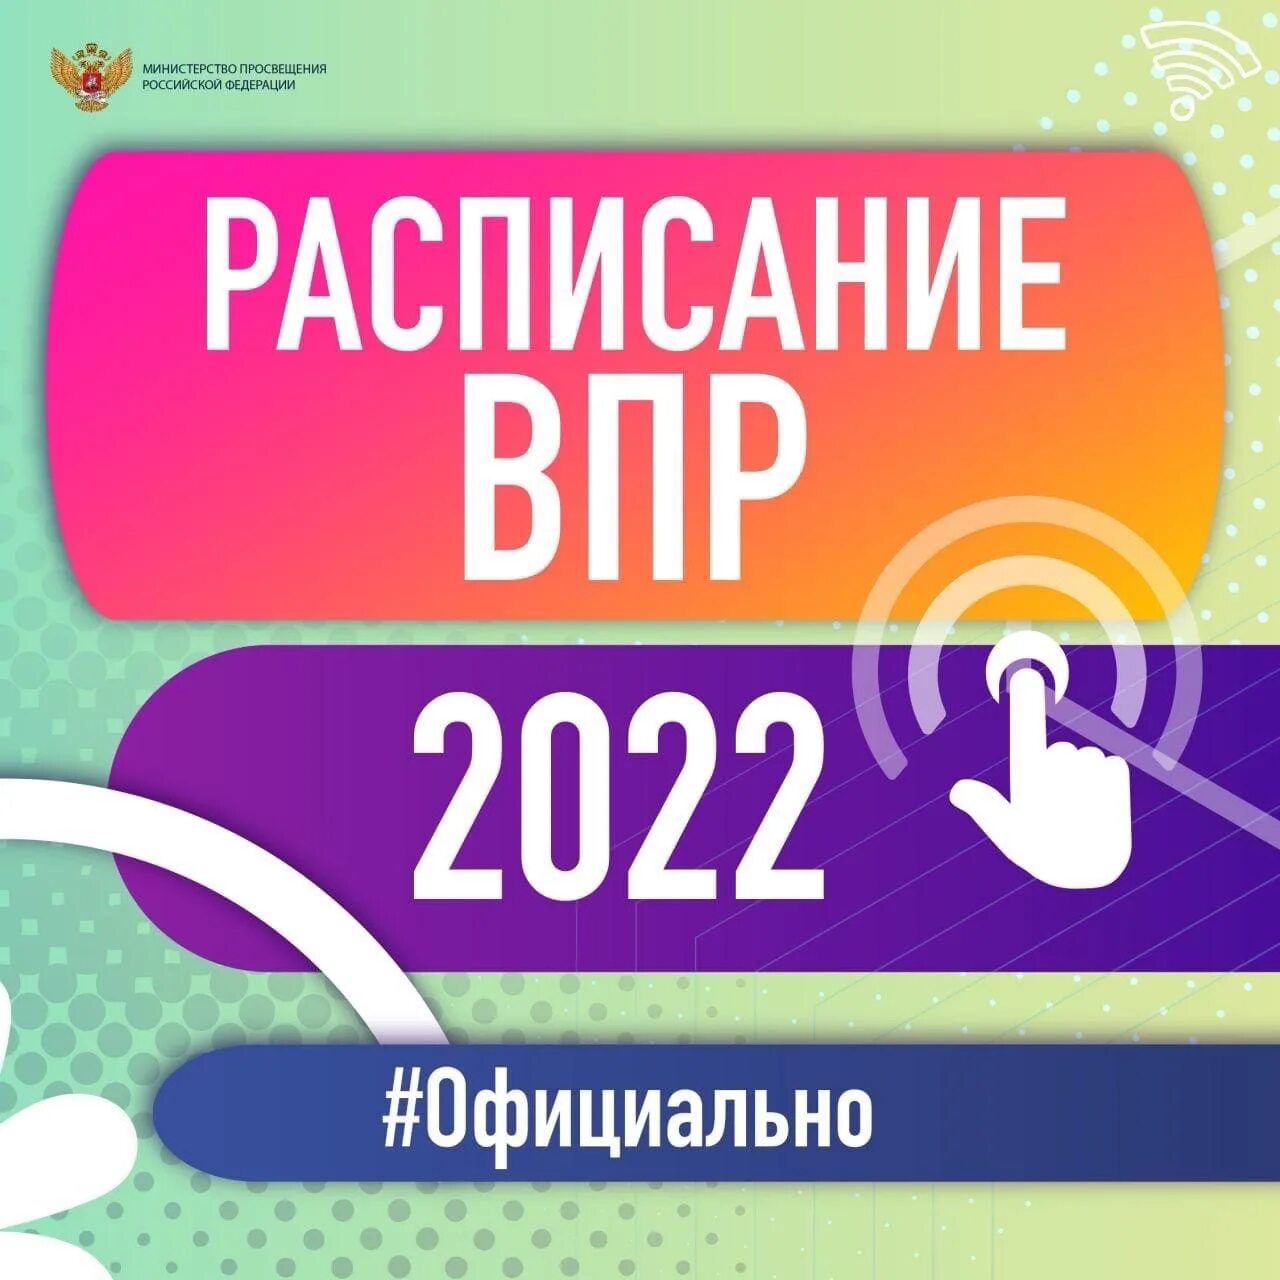 Вопросы впр 2022. ВПР 2022. График проведения ВПР 2022. ВПР 2022 расписание. Логотип ВПР 2022.